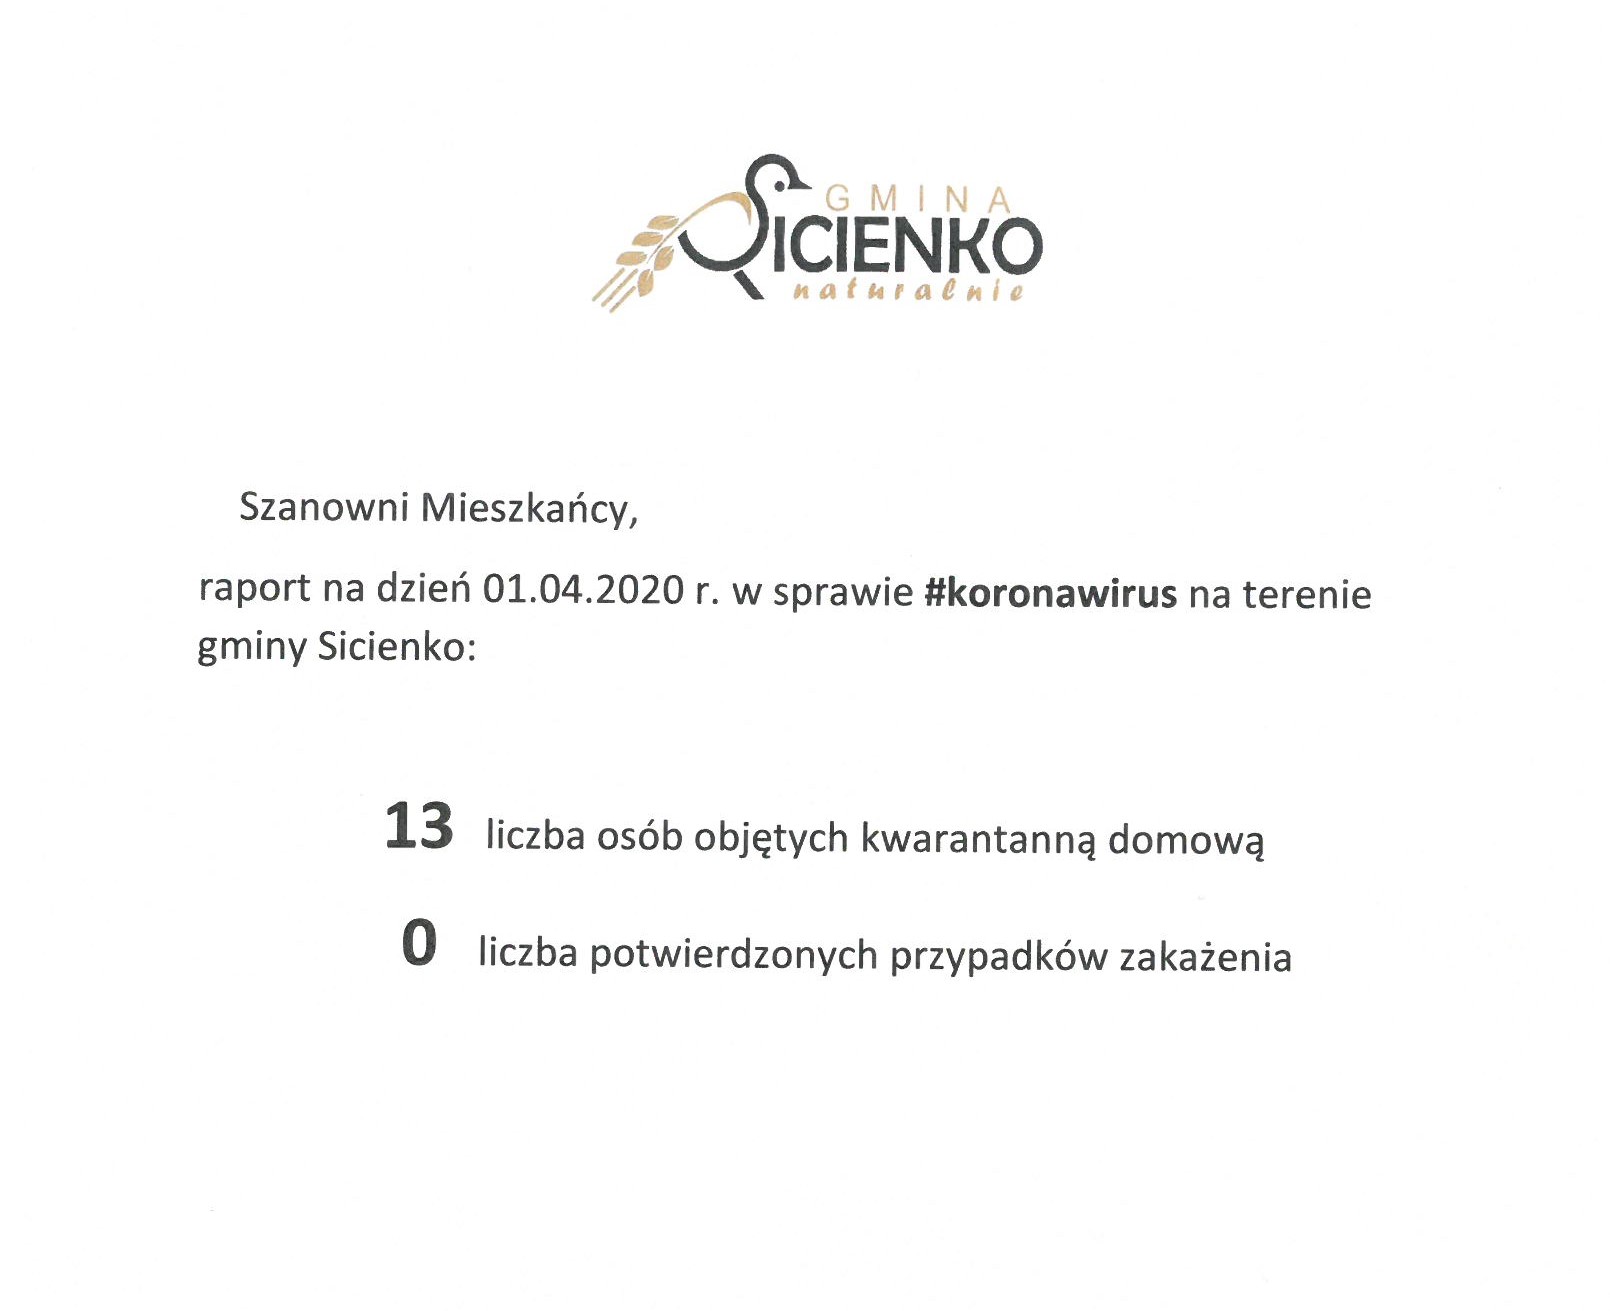 Raport dzienny w sprawie koronawirus na terenie gminy Sicienko